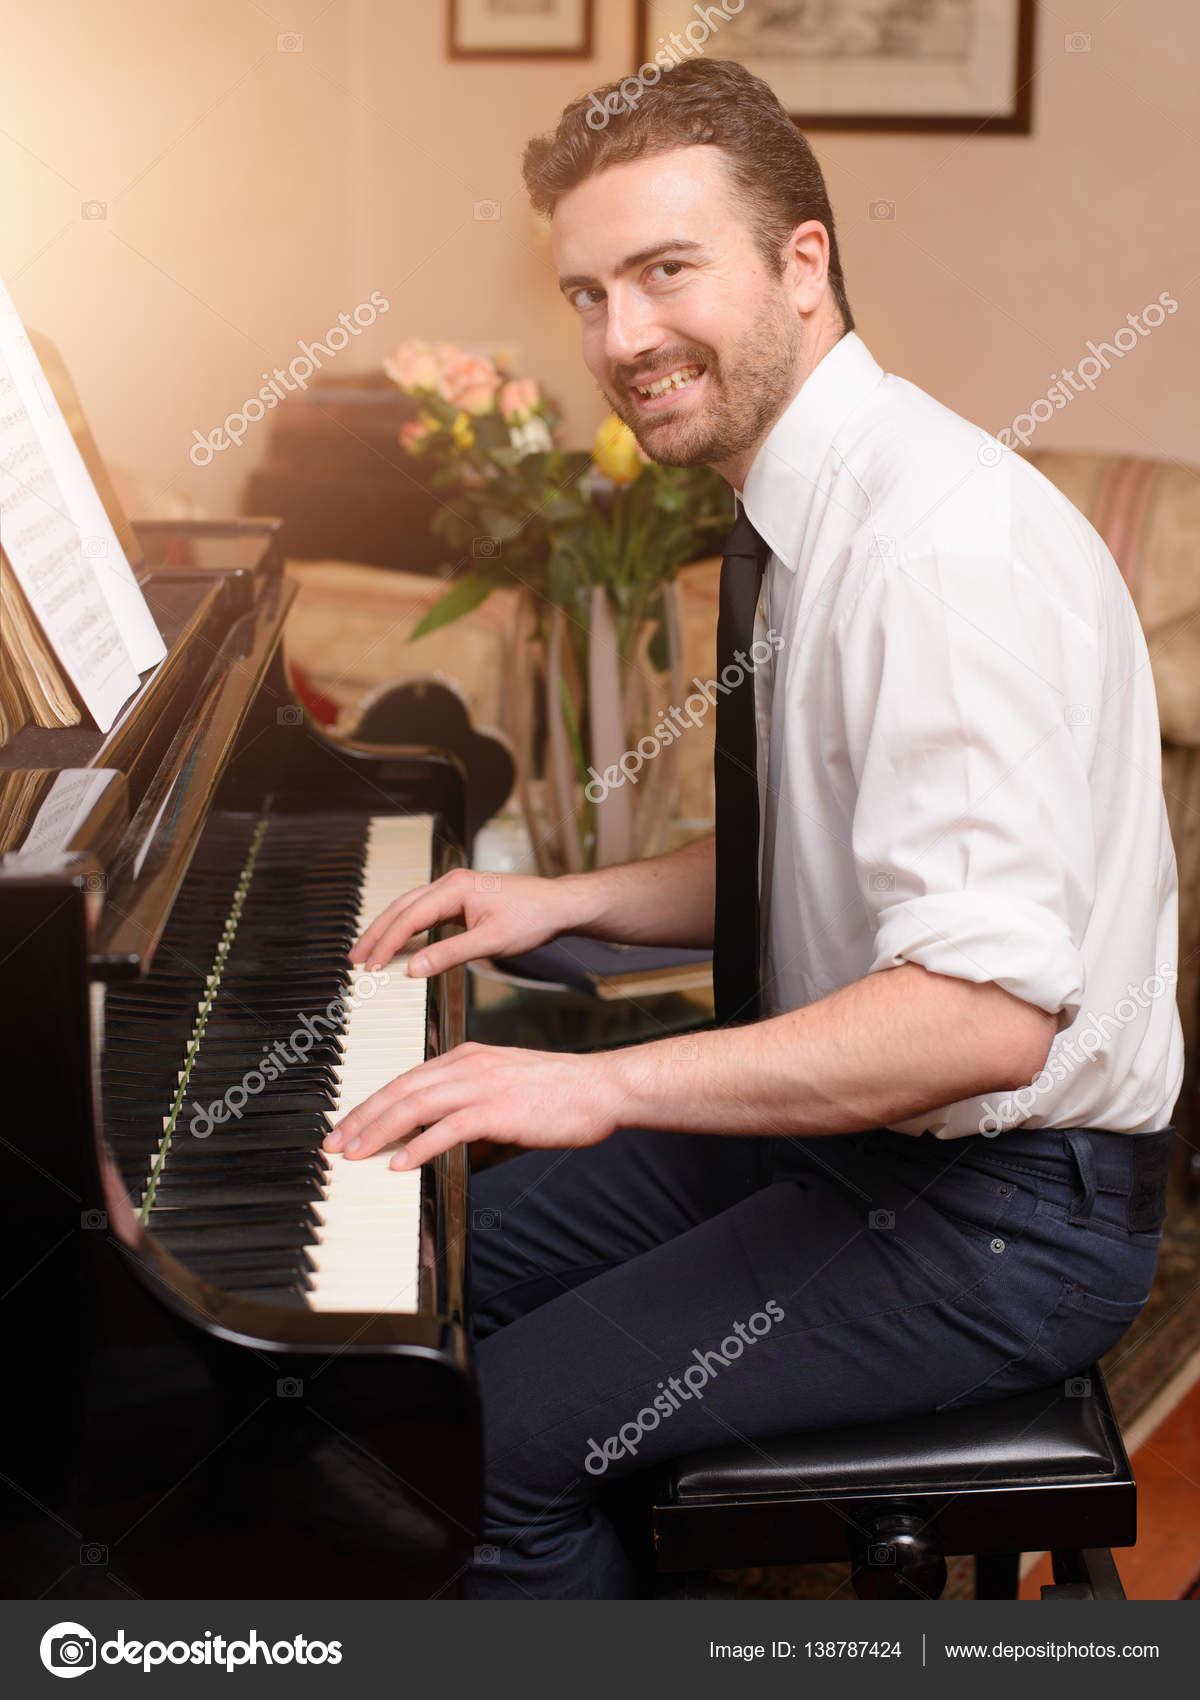 Retrato De Um Pianista Com Barba Confiável, Parado Perto Do Piano Em Casa  Na Sala De Estar. Imagem de Stock - Imagem de pessoa, adulto: 214342135